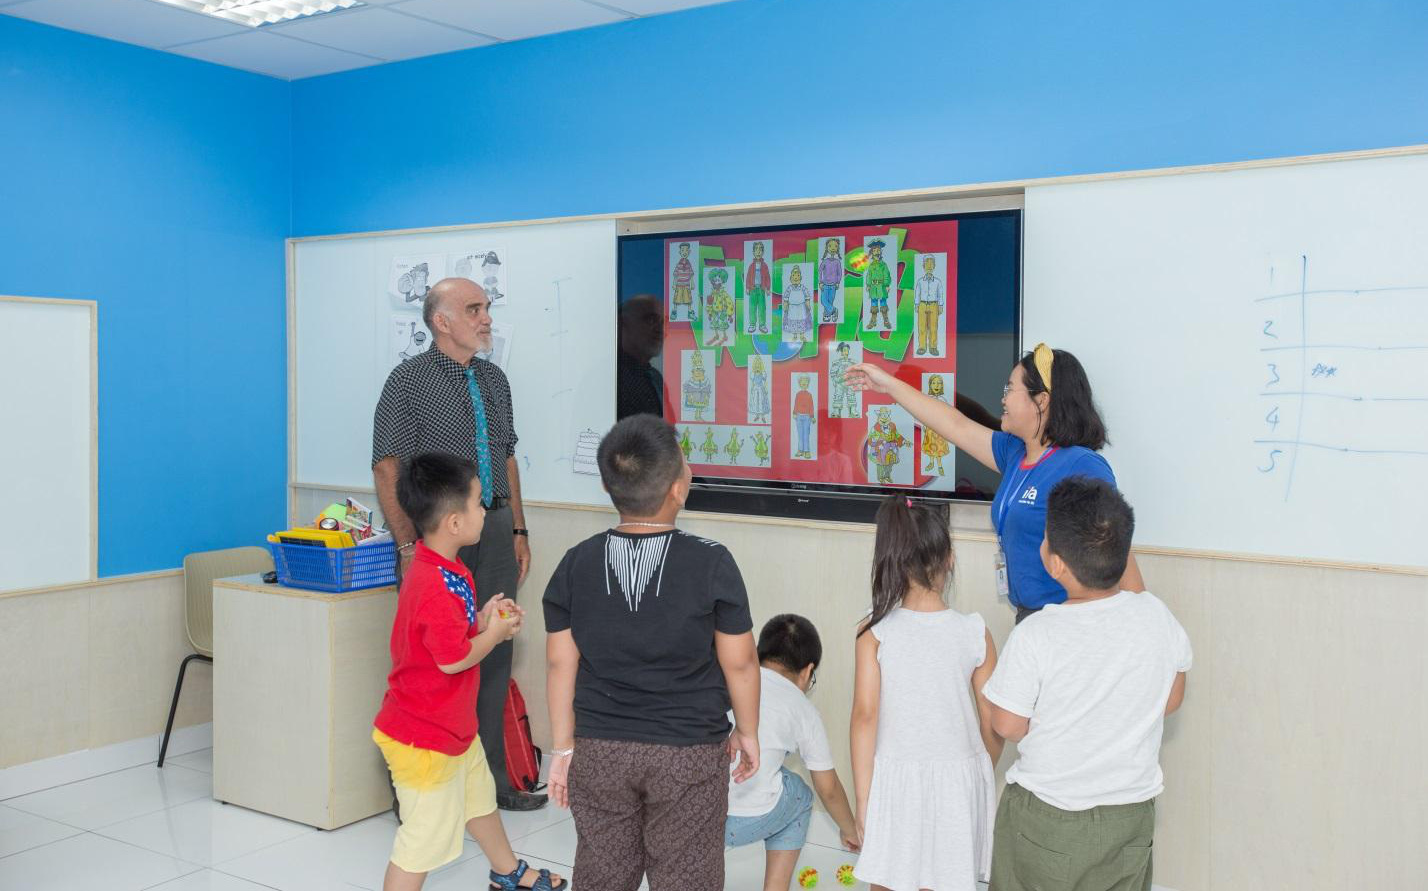 ILA Việt Nam - Thành công khi đầu tư nghiêm túc vào giáo dục